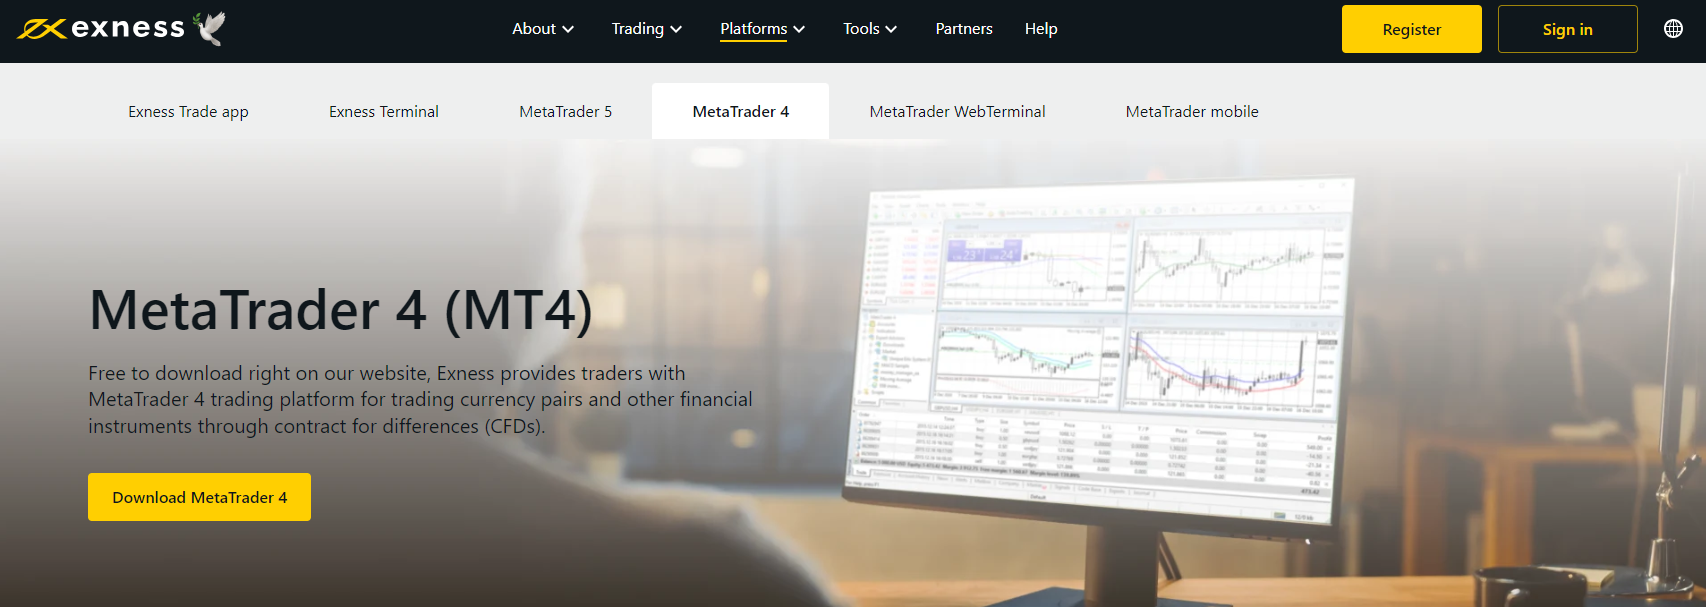 MetaTrader 4 - Trading Platform on Exness